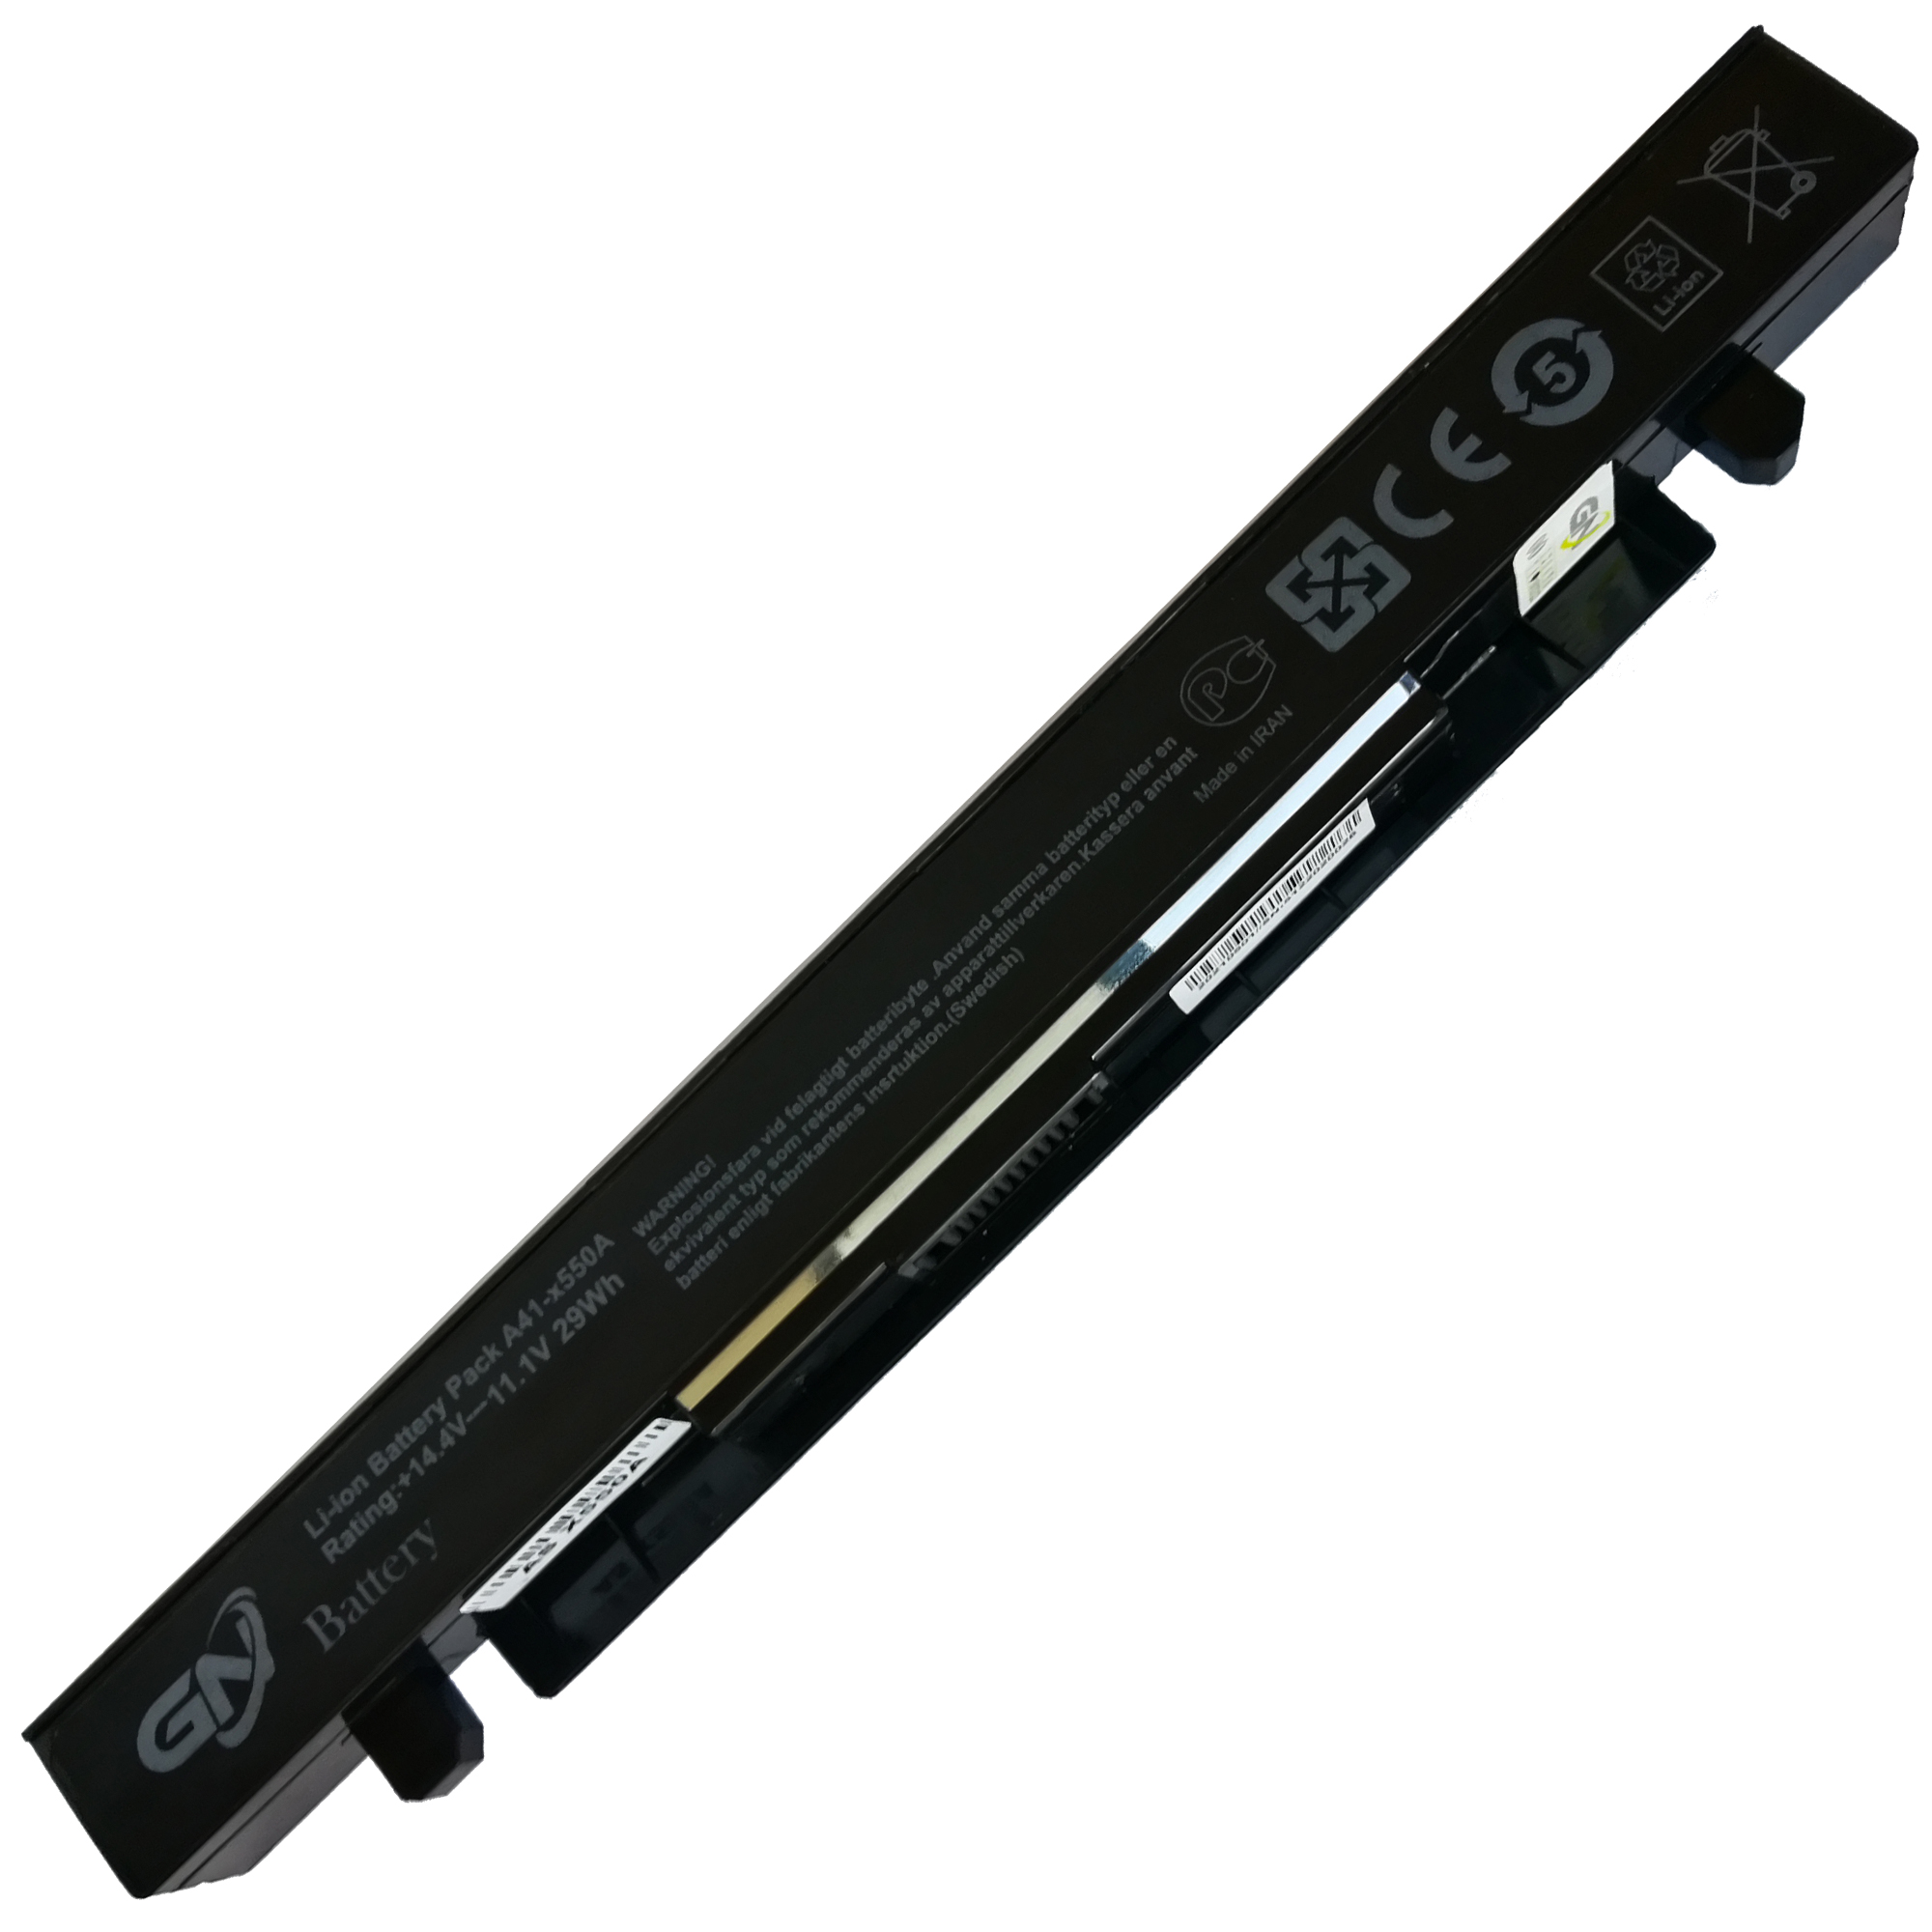 باتری لپ تاپ 4 سلولی گلدن نوت بوک جی ان مدل A41-X550a مناسب برای لپ تاپ ایسوس X550/X450/X552/K550/X452/F550/A450/K450